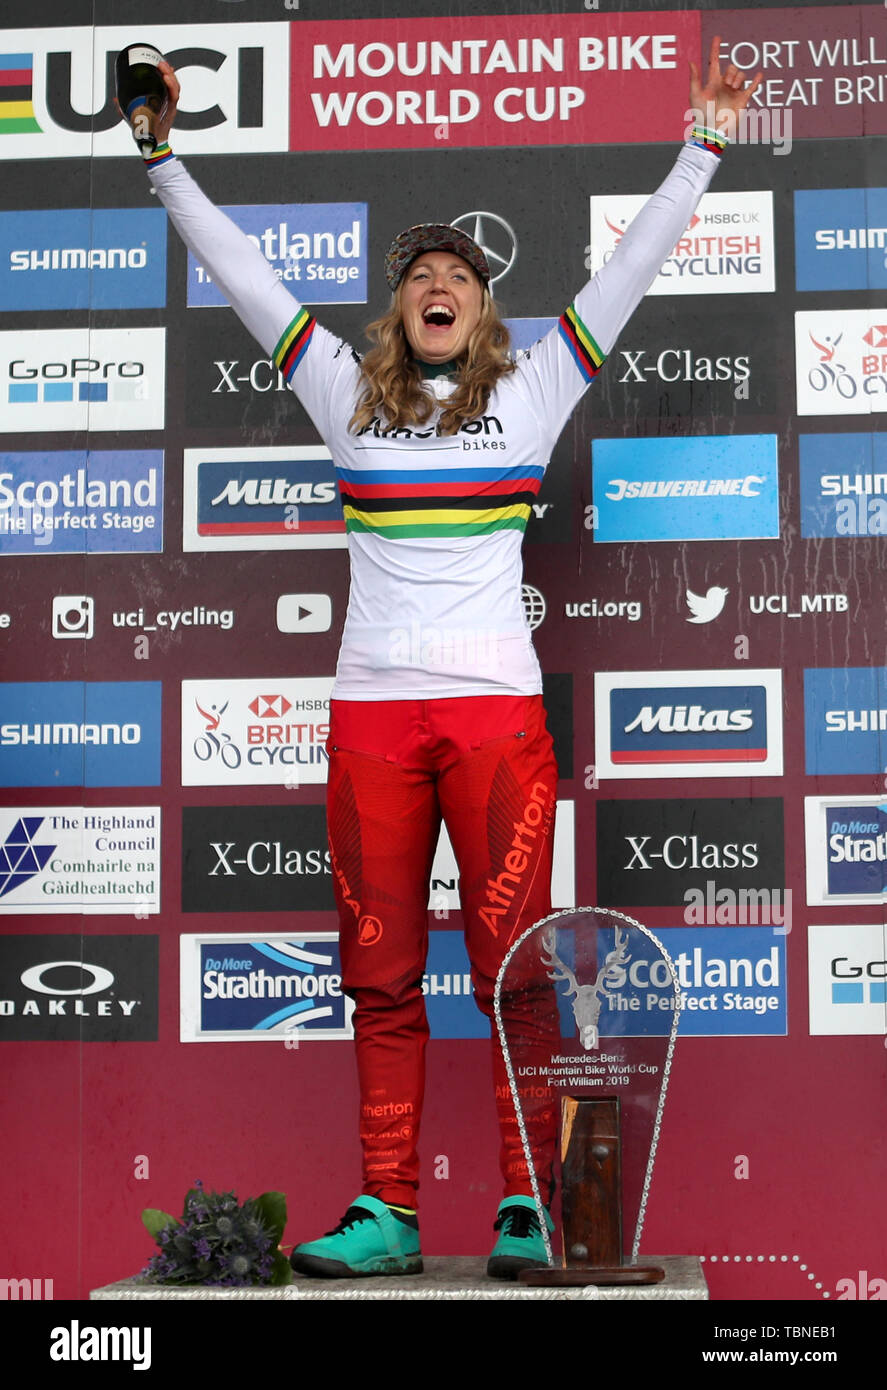 La société britannique Rachel Atherton sur le podium célèbre remportant la descente des femmes pendant la Coupe du Monde de vélo de montagne UCI à Fort William. Banque D'Images